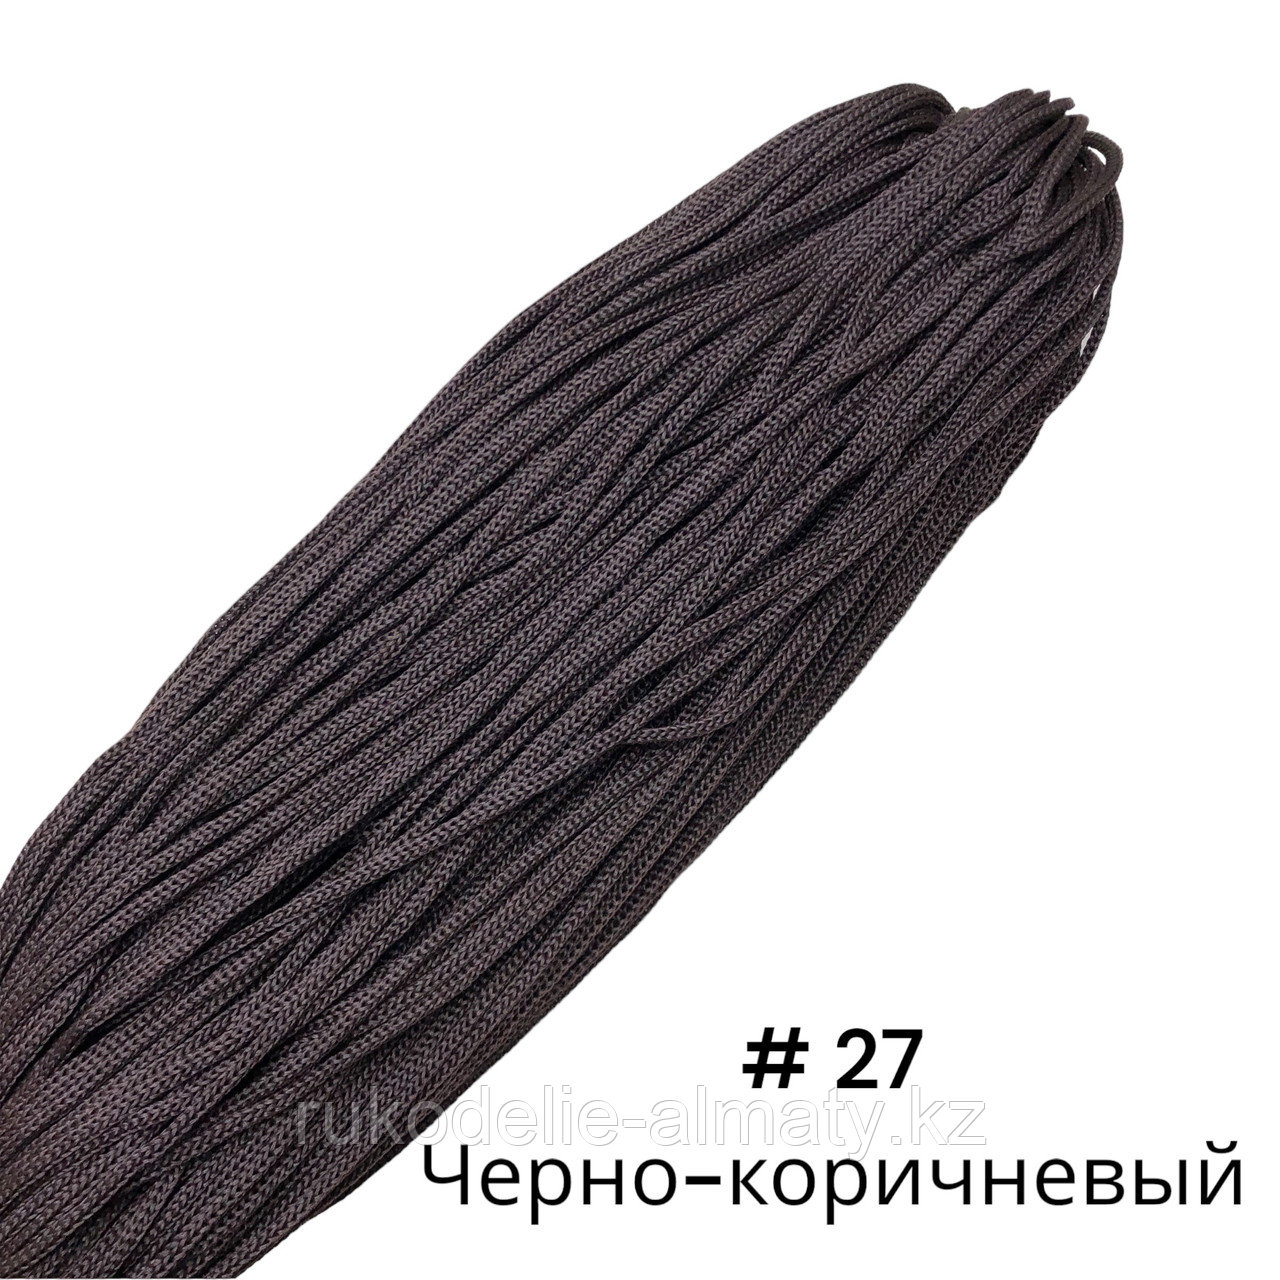 Полиэфирный шнур без сердечника, 3мм, пасма ⠀ черно-коричневый